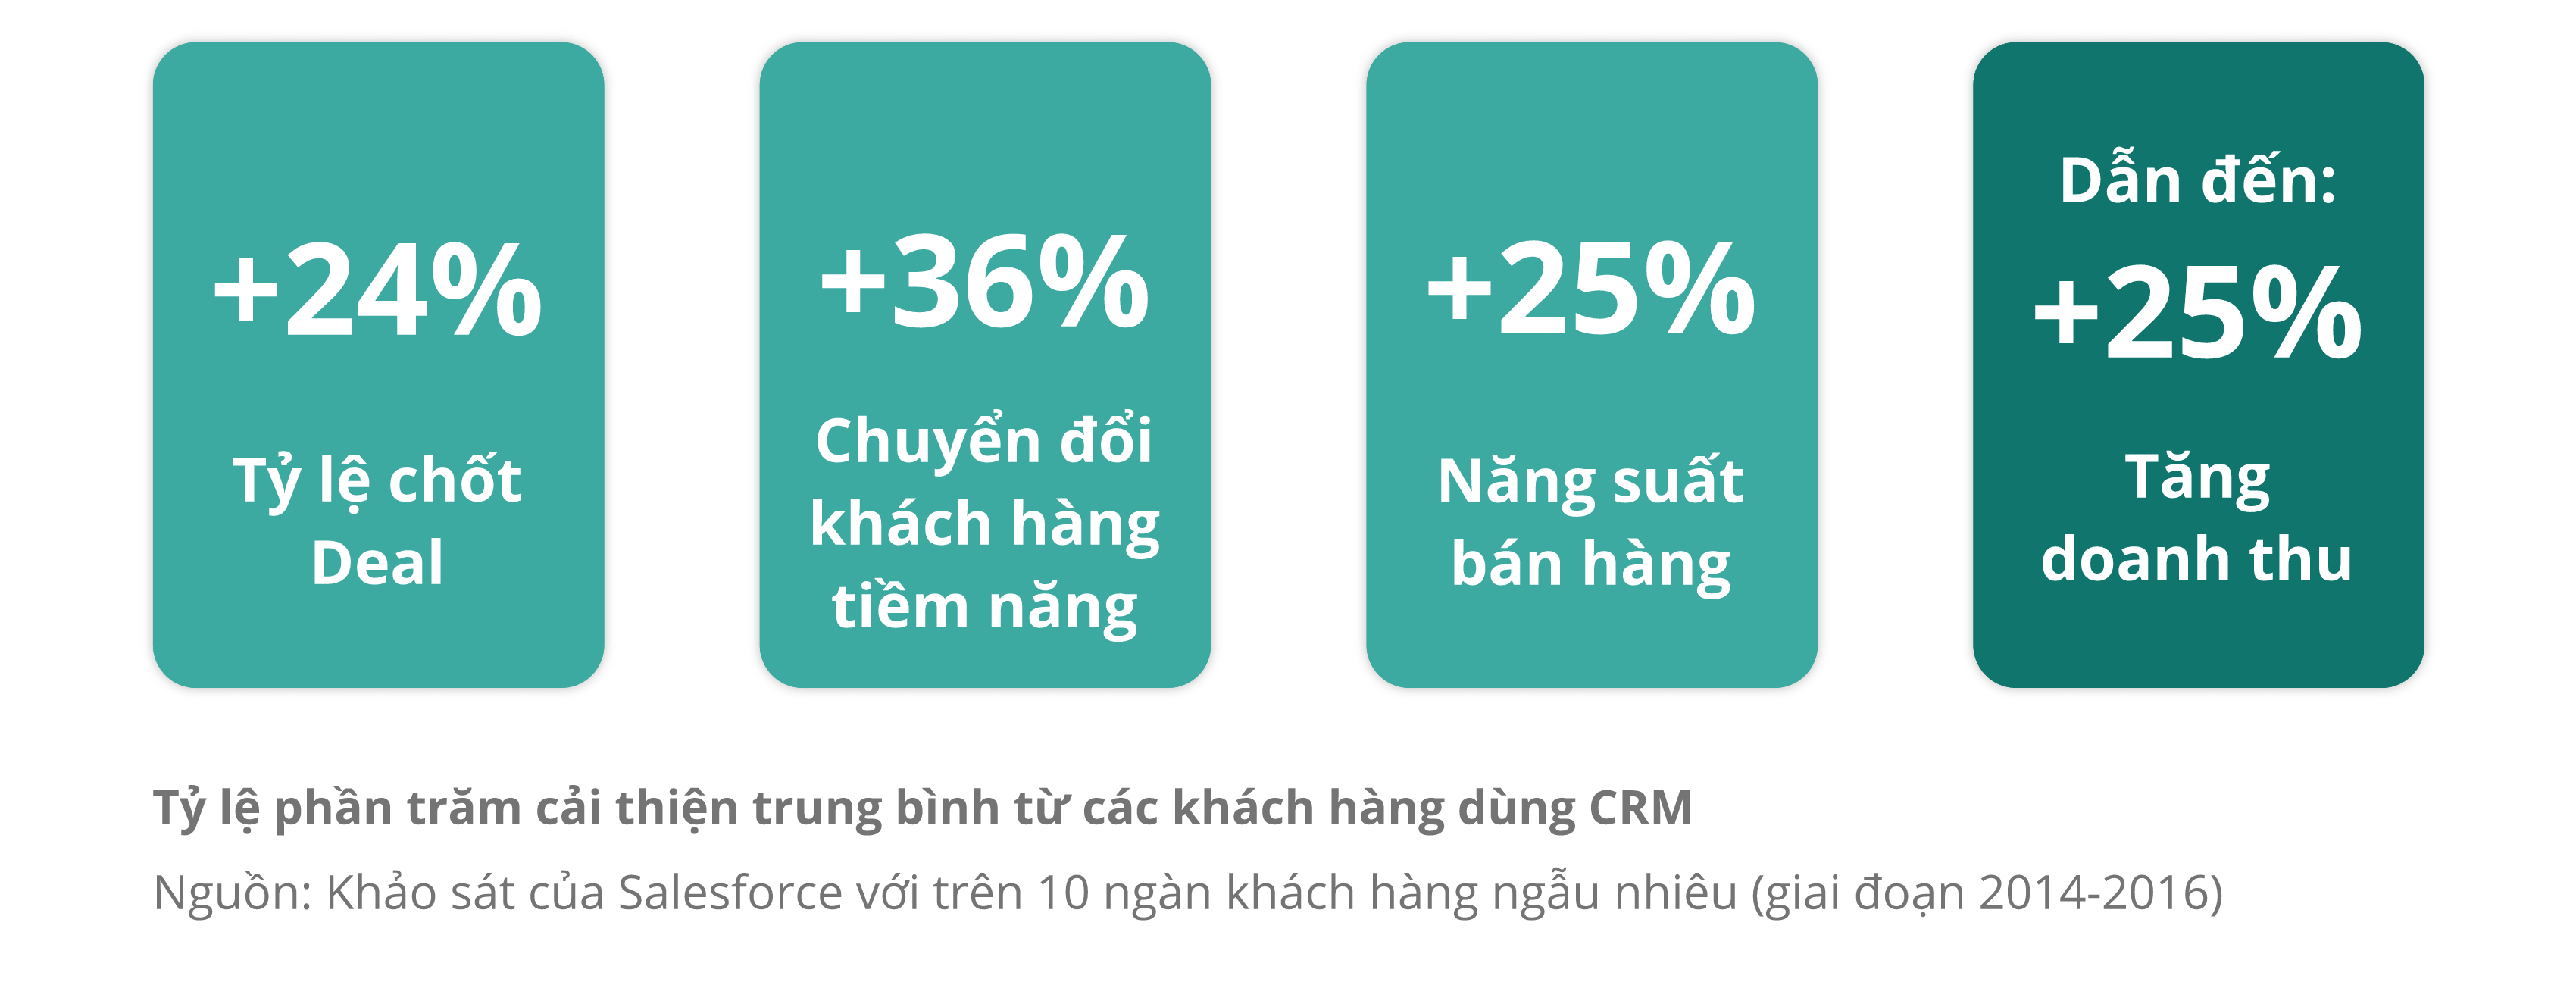 CRM giúp tăng tỷ lệ chốt deal